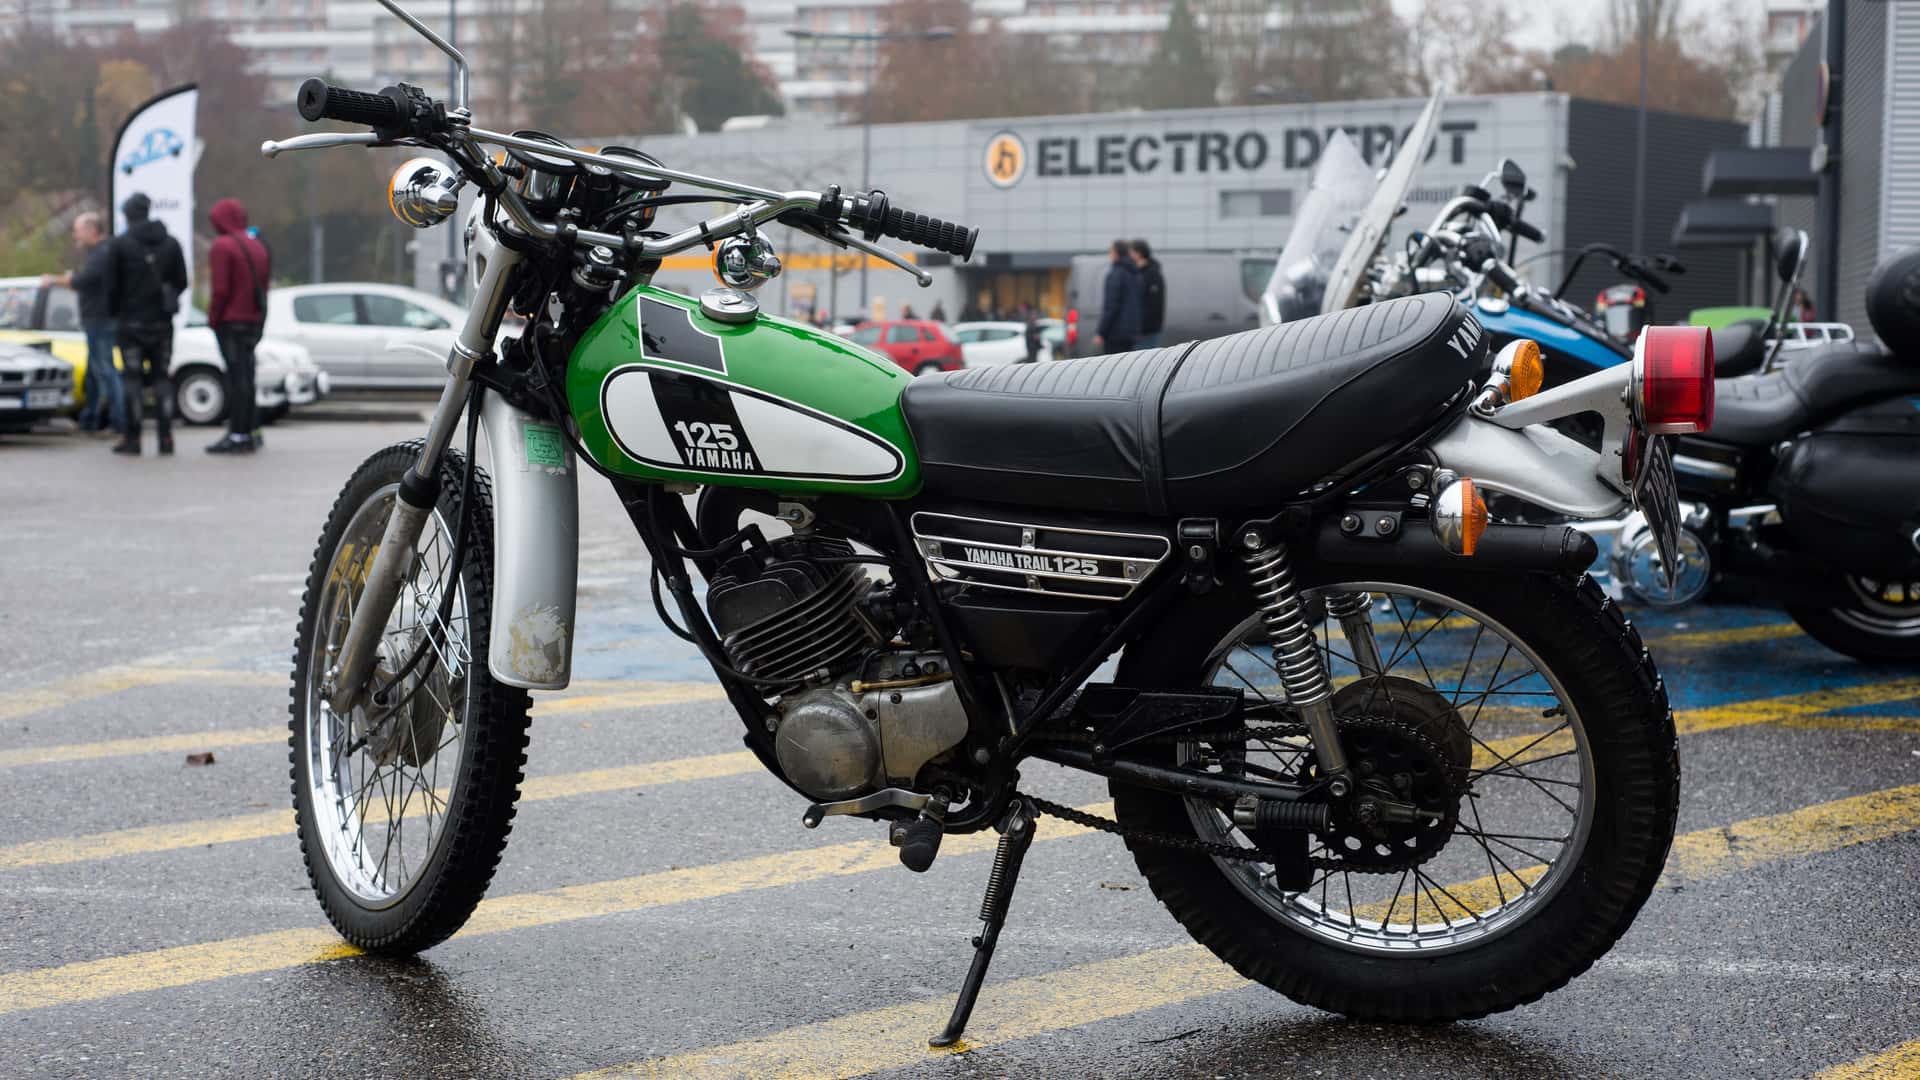 Moto de 125 cc custom con seguro contratado